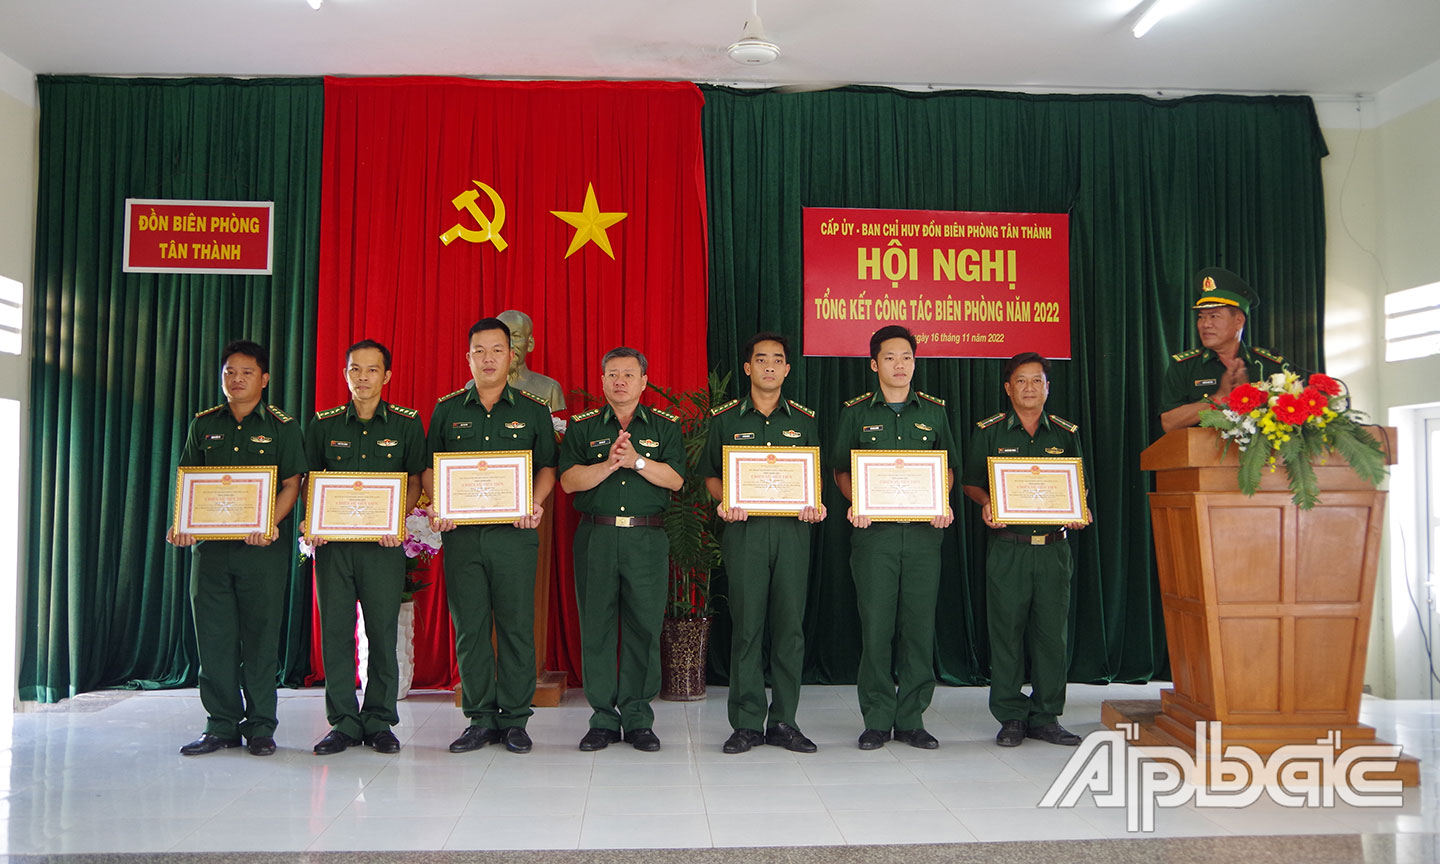 Đồng chí Đại tá Bùi Văn Vũ, Chính ủy BĐBP Tiền Giang trao tặng giấy khen cho các tập thể, cá nhân đạt thành tích xuất sắc trong phong trào thi đua Quyết thắng năm 2022.